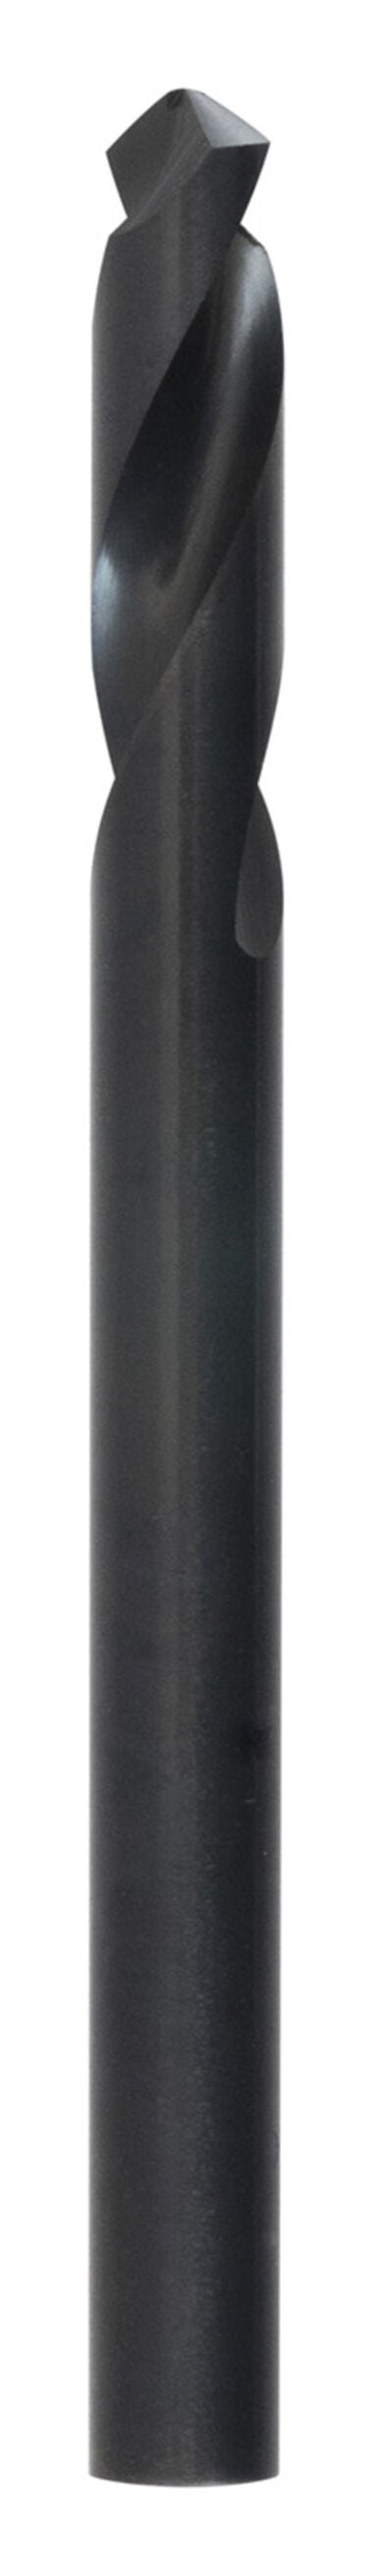 MK Morse Pilot Drill Bit 1/4in X 3 3/32in 1pk